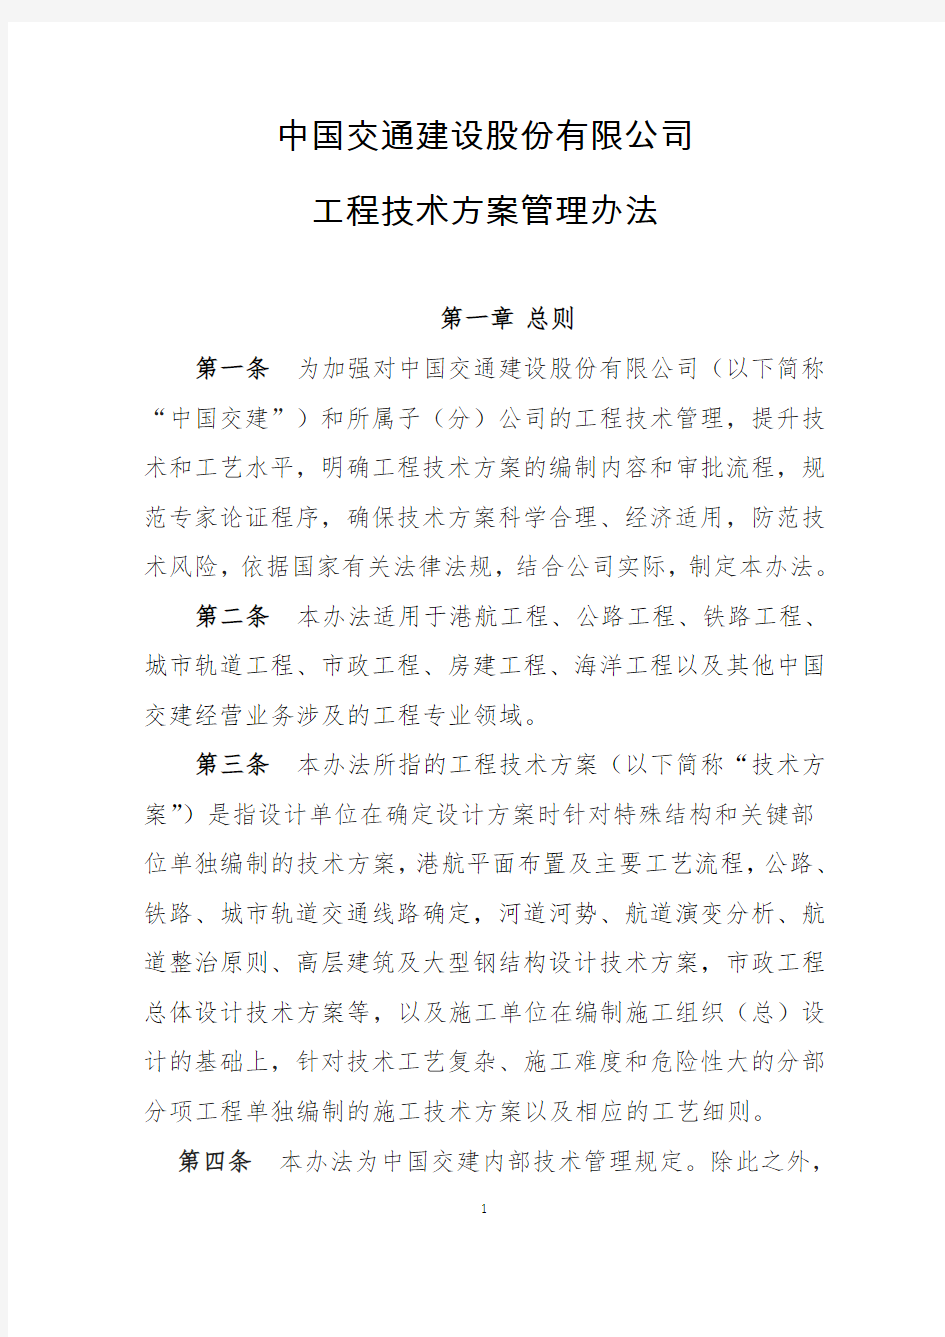 中国交通建设股份有限公司工程技术方案管理办法